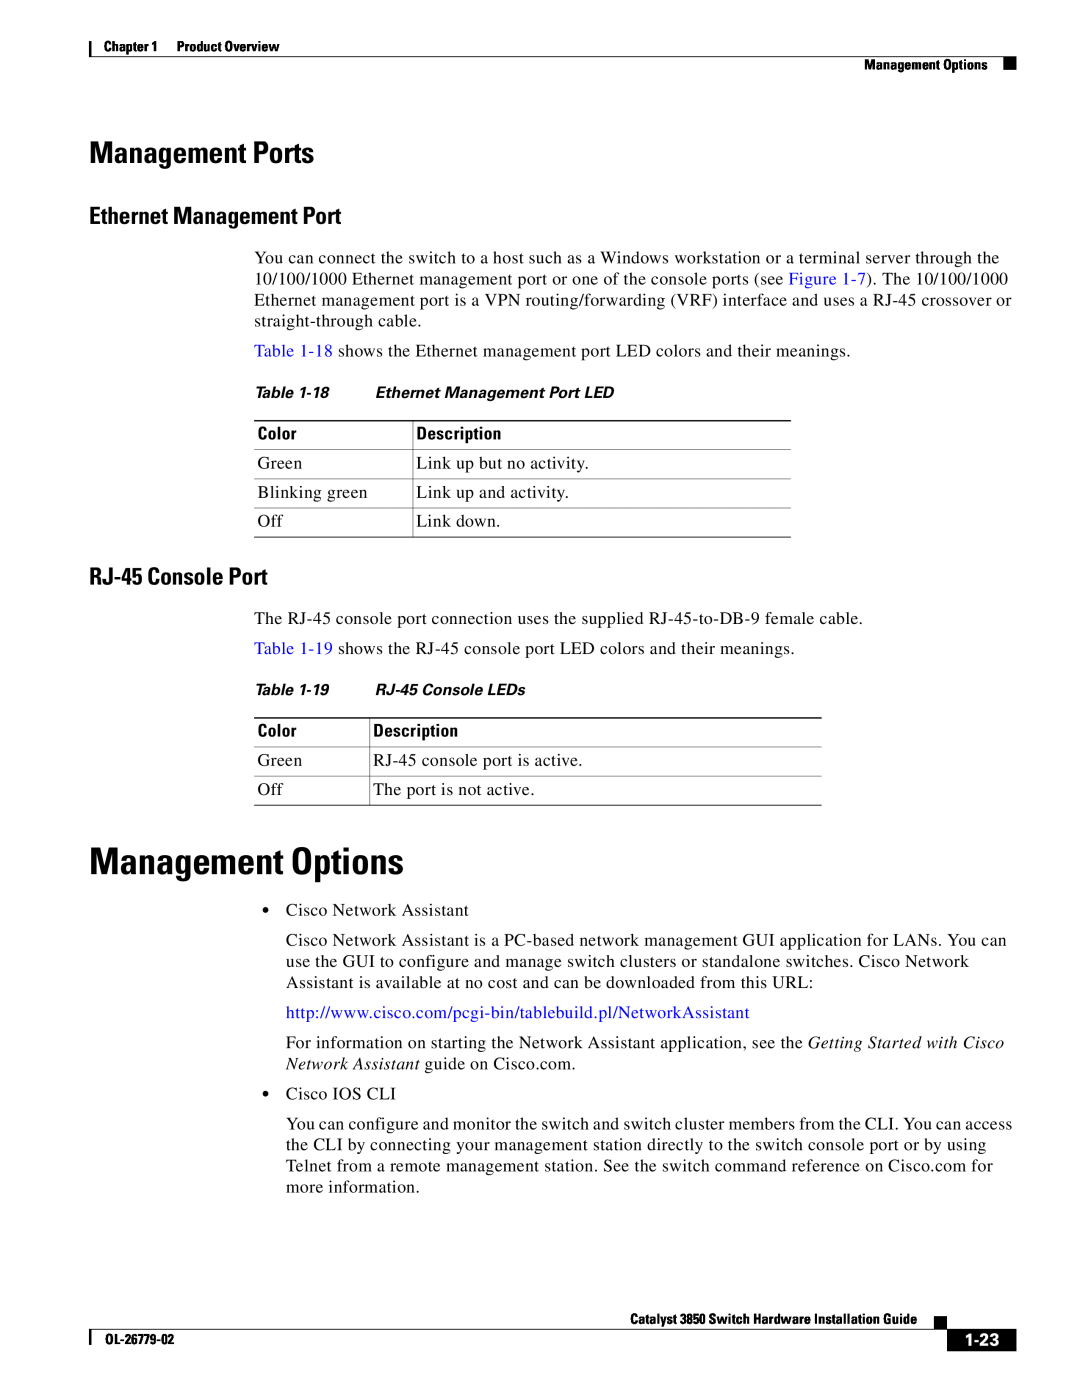 Cisco Systems WSC385024TS manual Management Options, Ethernet Management Port, RJ-45 Console Port, 1-23, Management Ports 